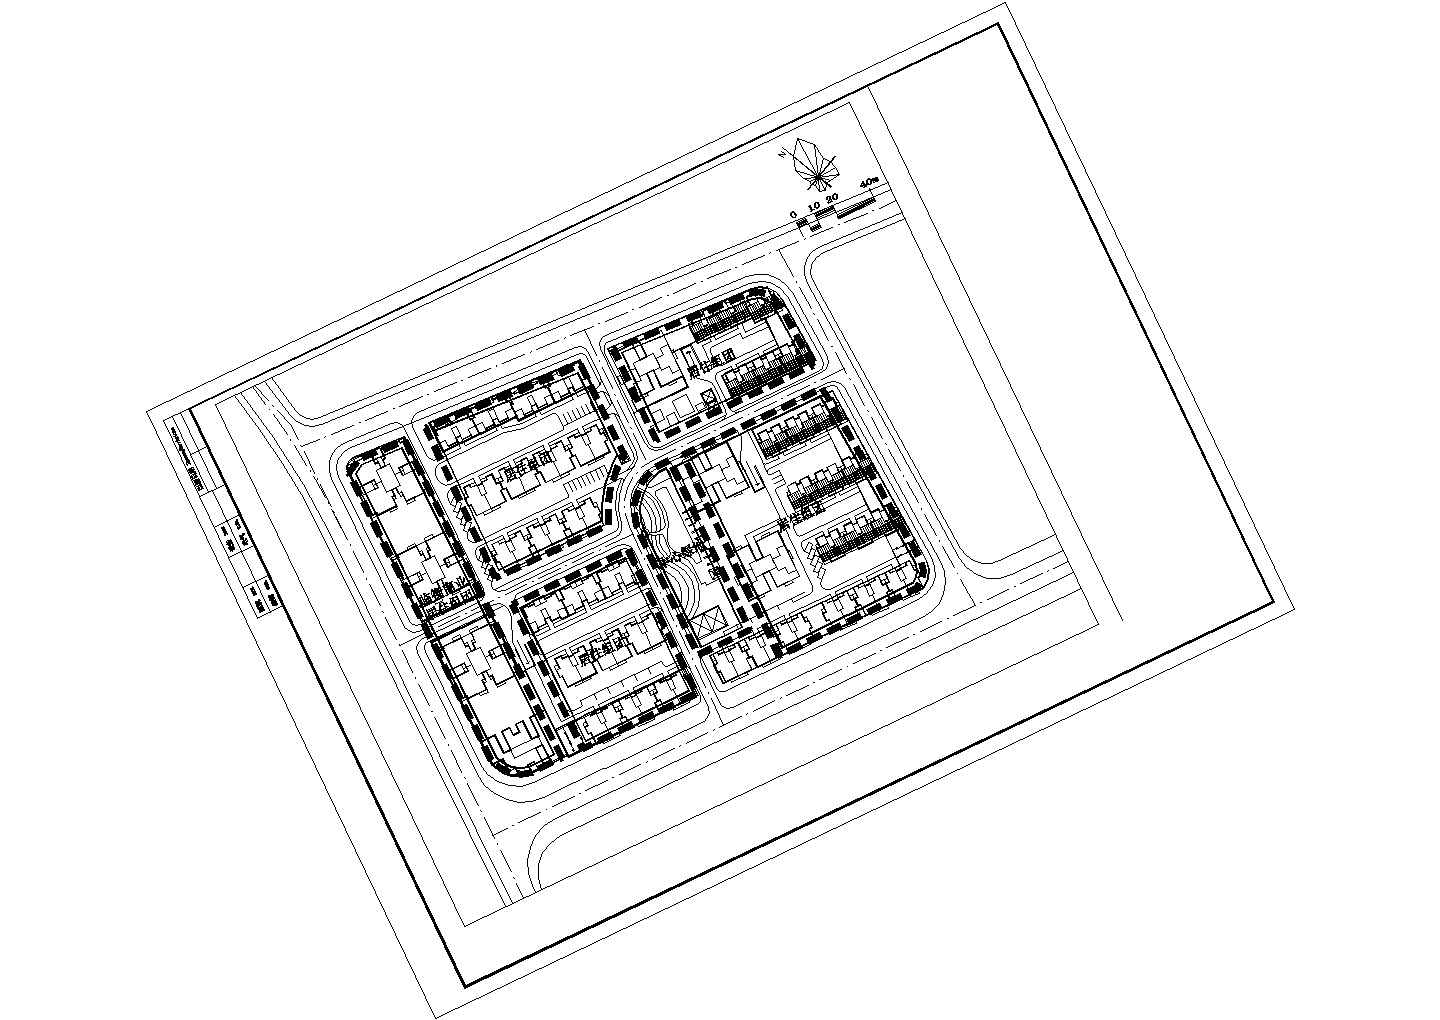 苏州某开发区新型小区楼盘样板房全套规划总图(含配套设施一览表)